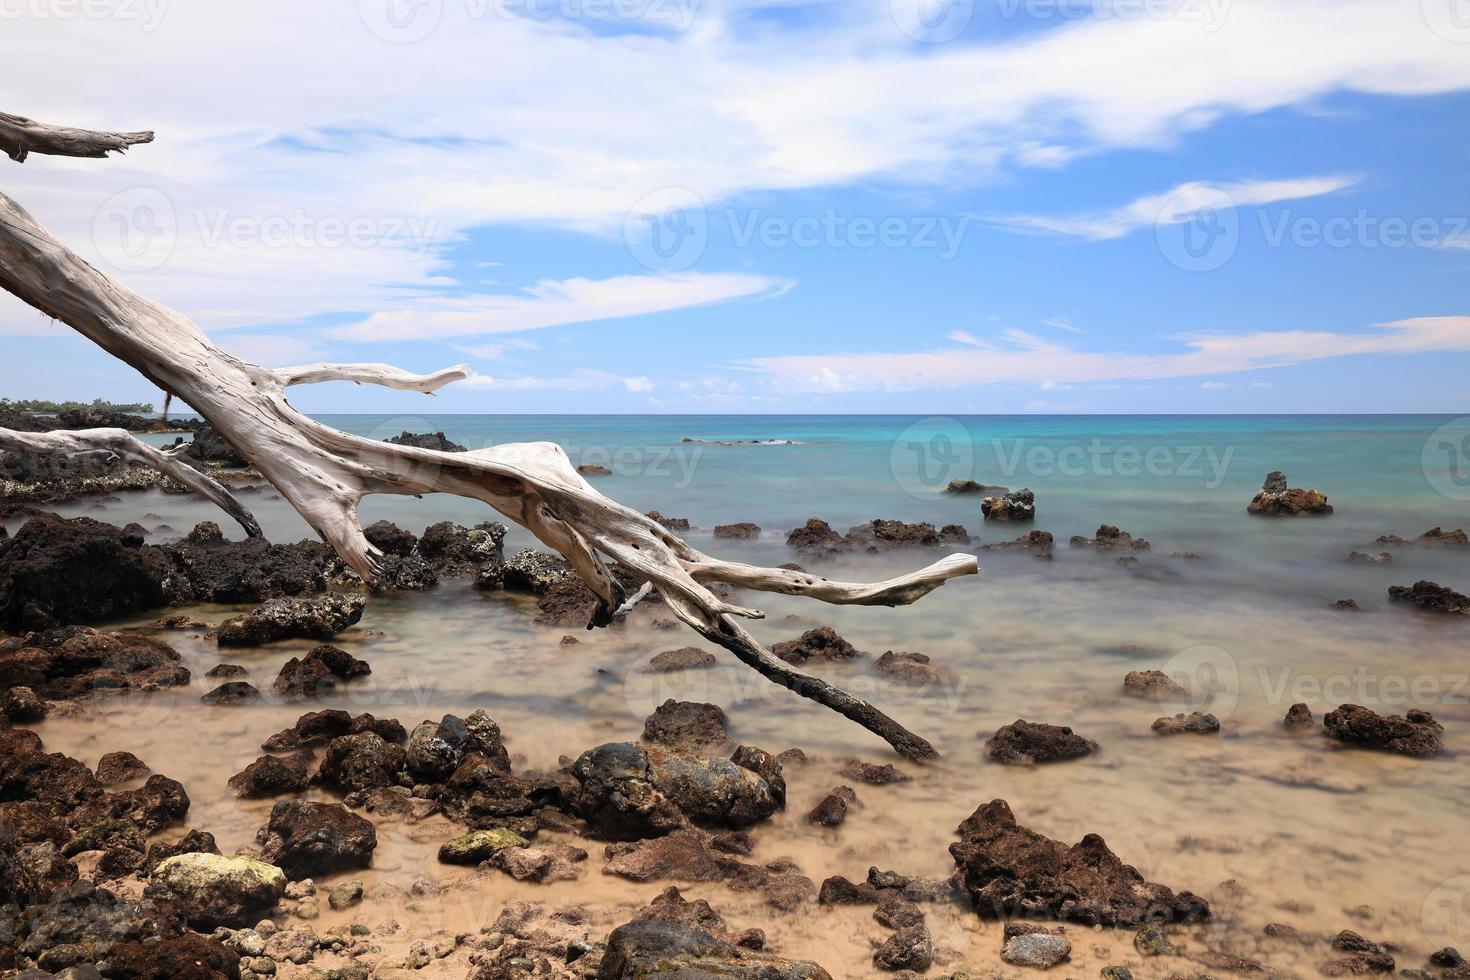 hawaii ö, strand 67 drivved och hav foto